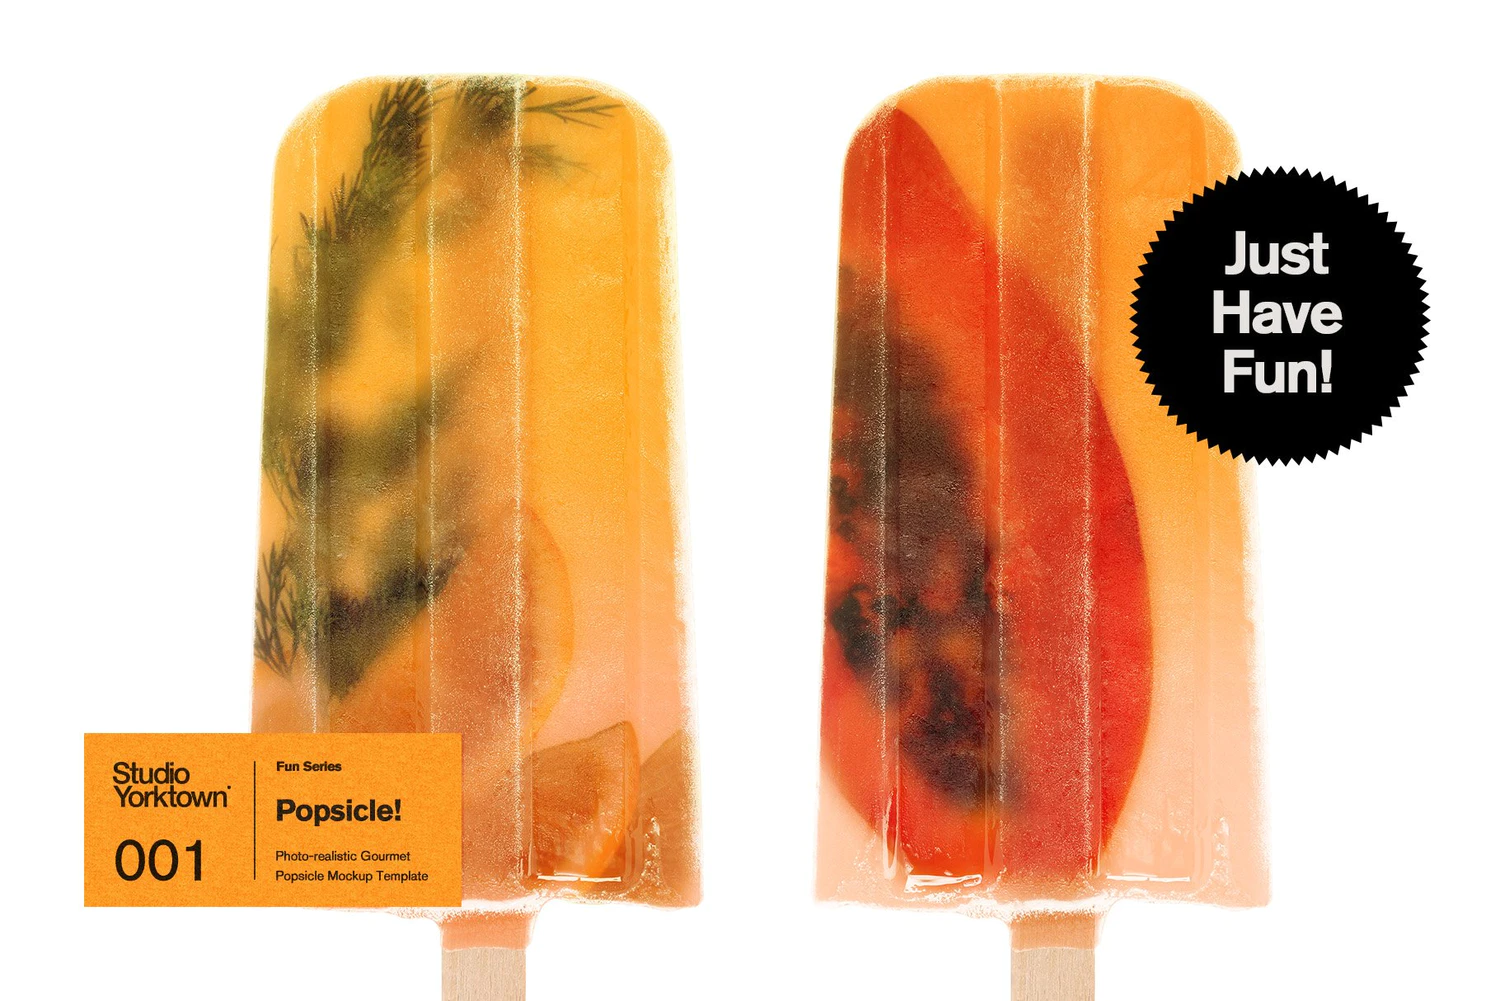 2511 水果夹心冰棍雪糕品牌设计展示PSD样机模板 Popsicle! Ice Pop Mockup Template